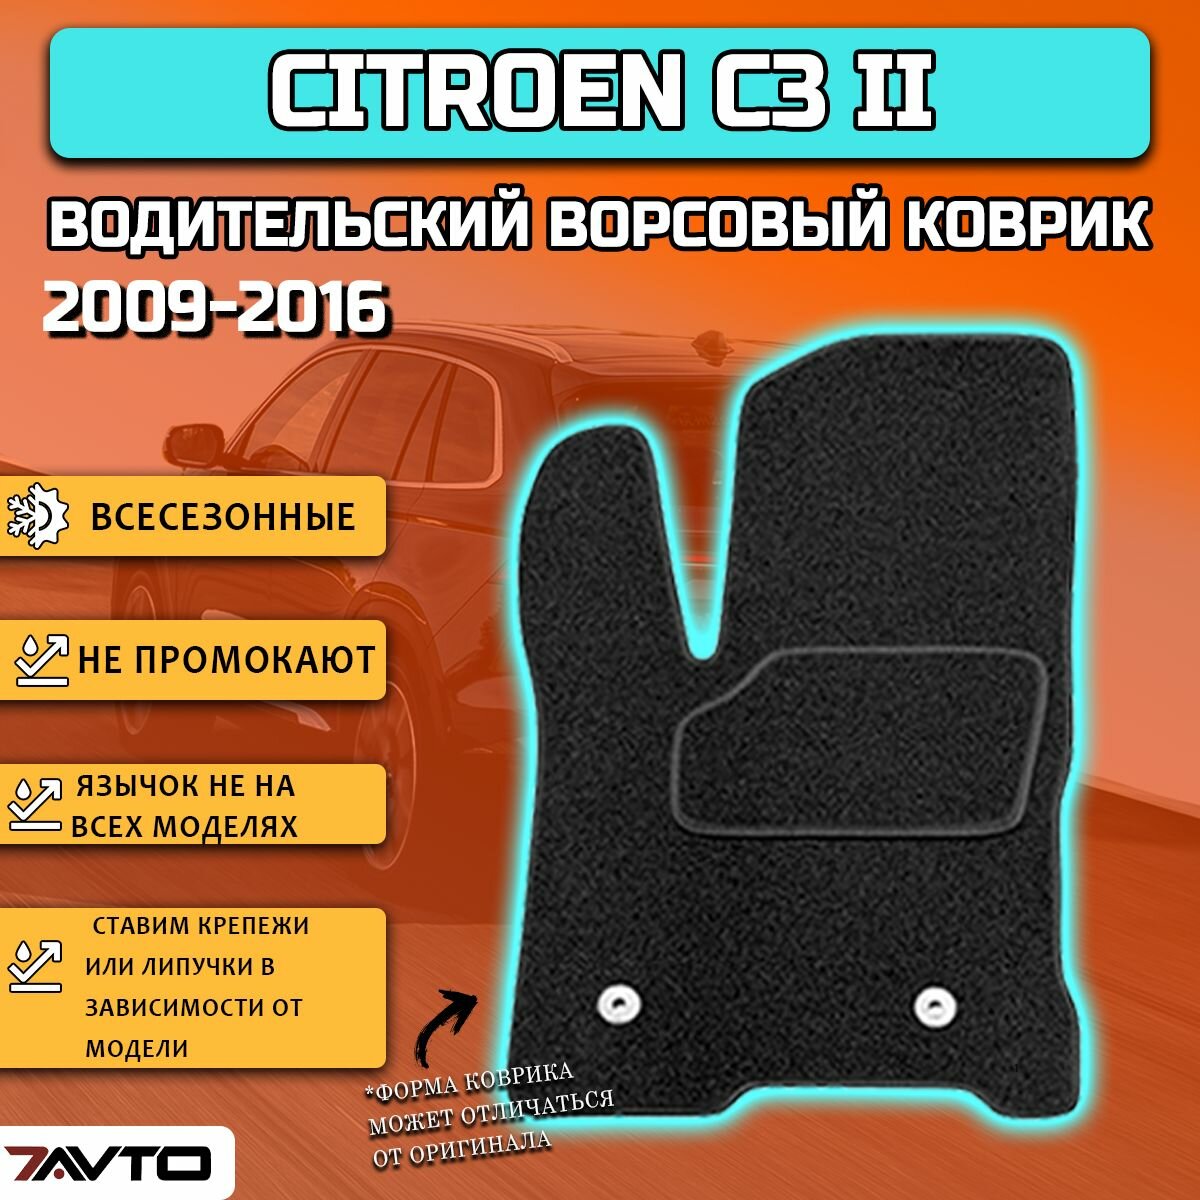 Водительский ворсовый коврик ECO на Citroen C3 II 2009-2016 / Ситроен Ц3